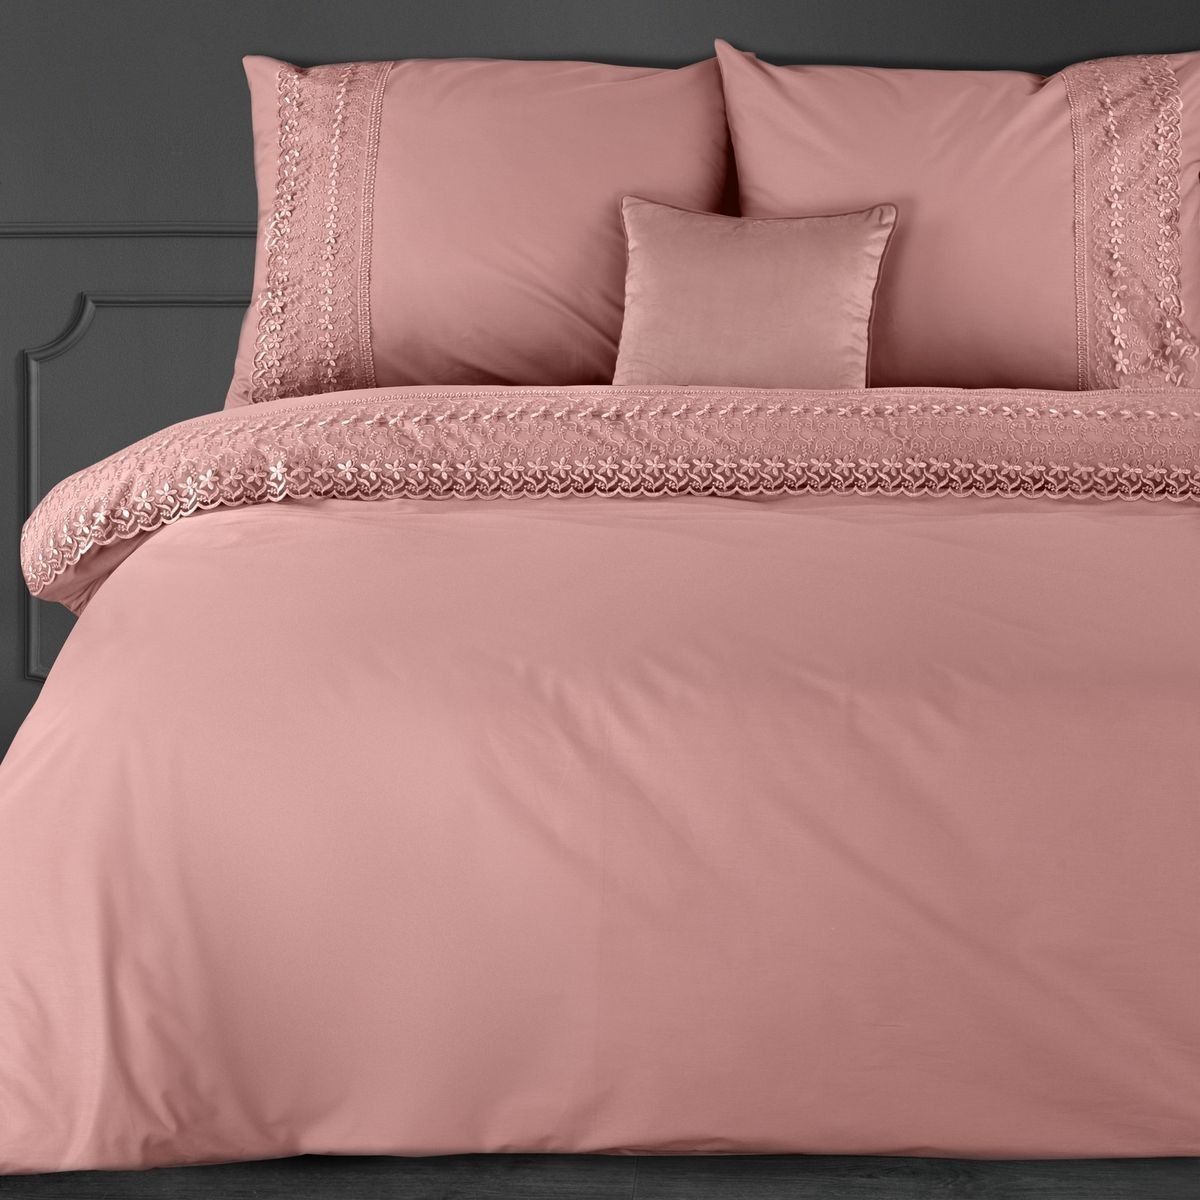 DomTextilu Romantické ružové bavlnené posteľné obliečky s francúzkou čipkou 3 časti: 1ks 160x200 + 2ks 70x80 Ružová 3 časti: 1ks 160x200 + 2ks 70x80 44860-209033